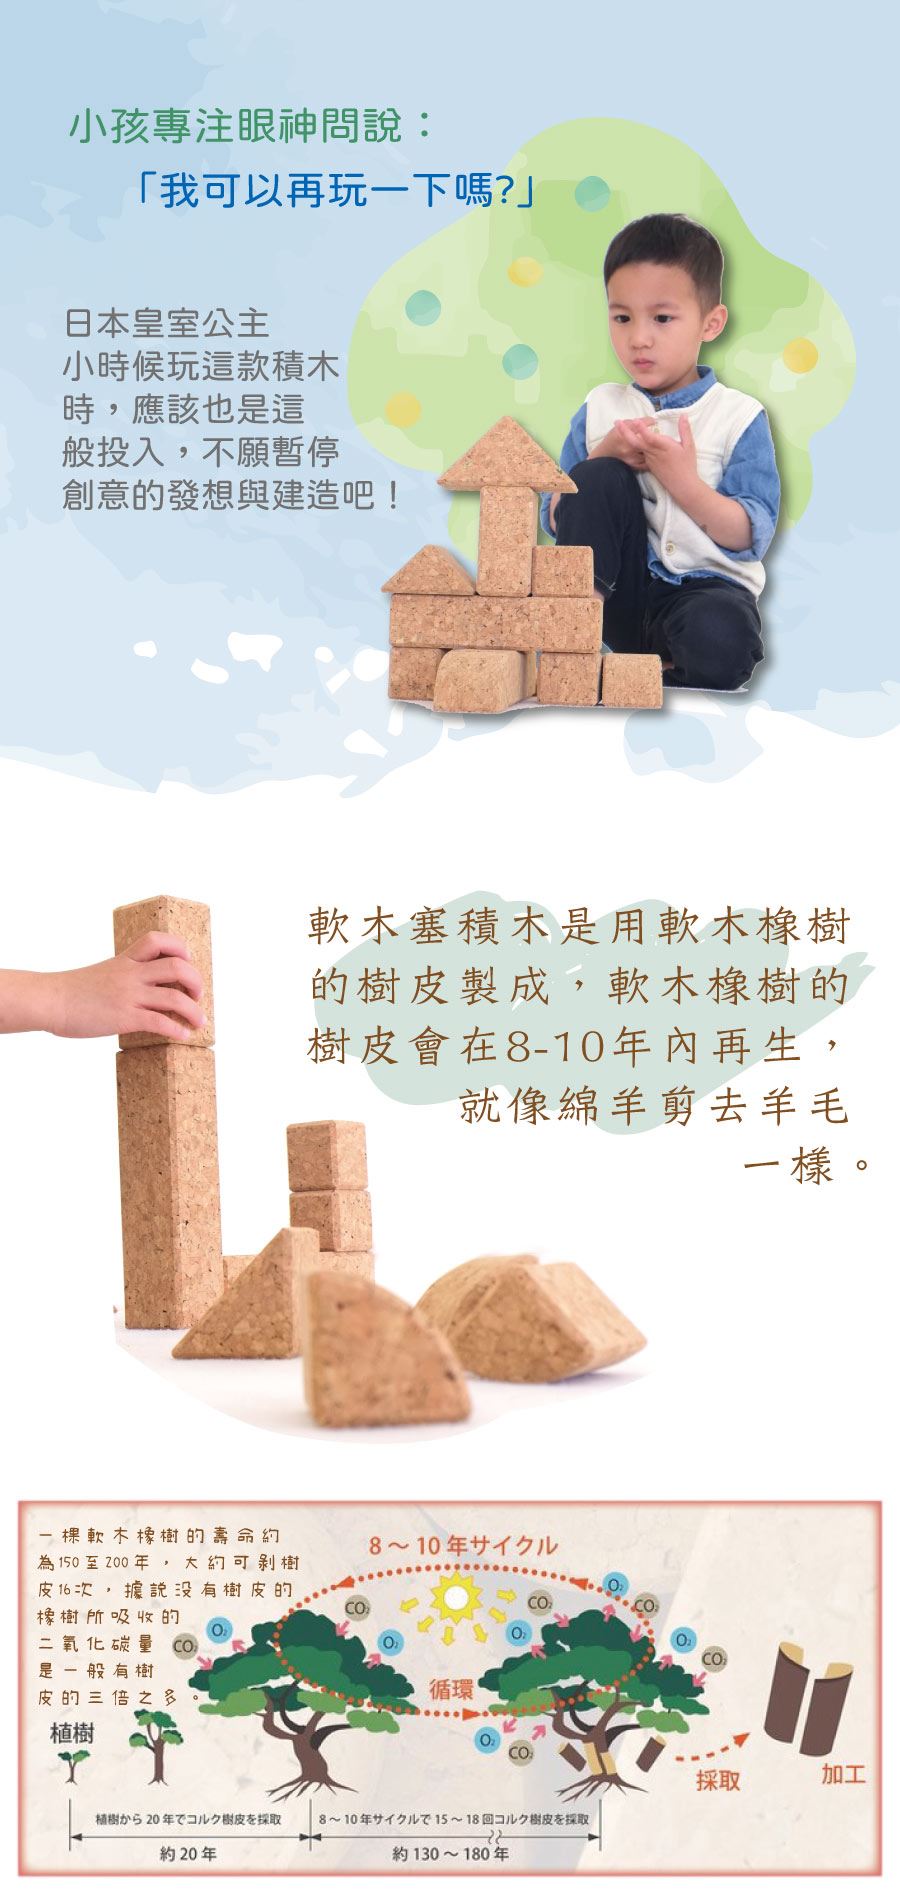 小孩專注眼神問說：「我可以再玩一下嗎?」 日本皇室公主小時候玩這款木質積木時，應該也是這般投入，不願暫停創意的發想與建造吧！輕巧且適合當作隨身積木。喔